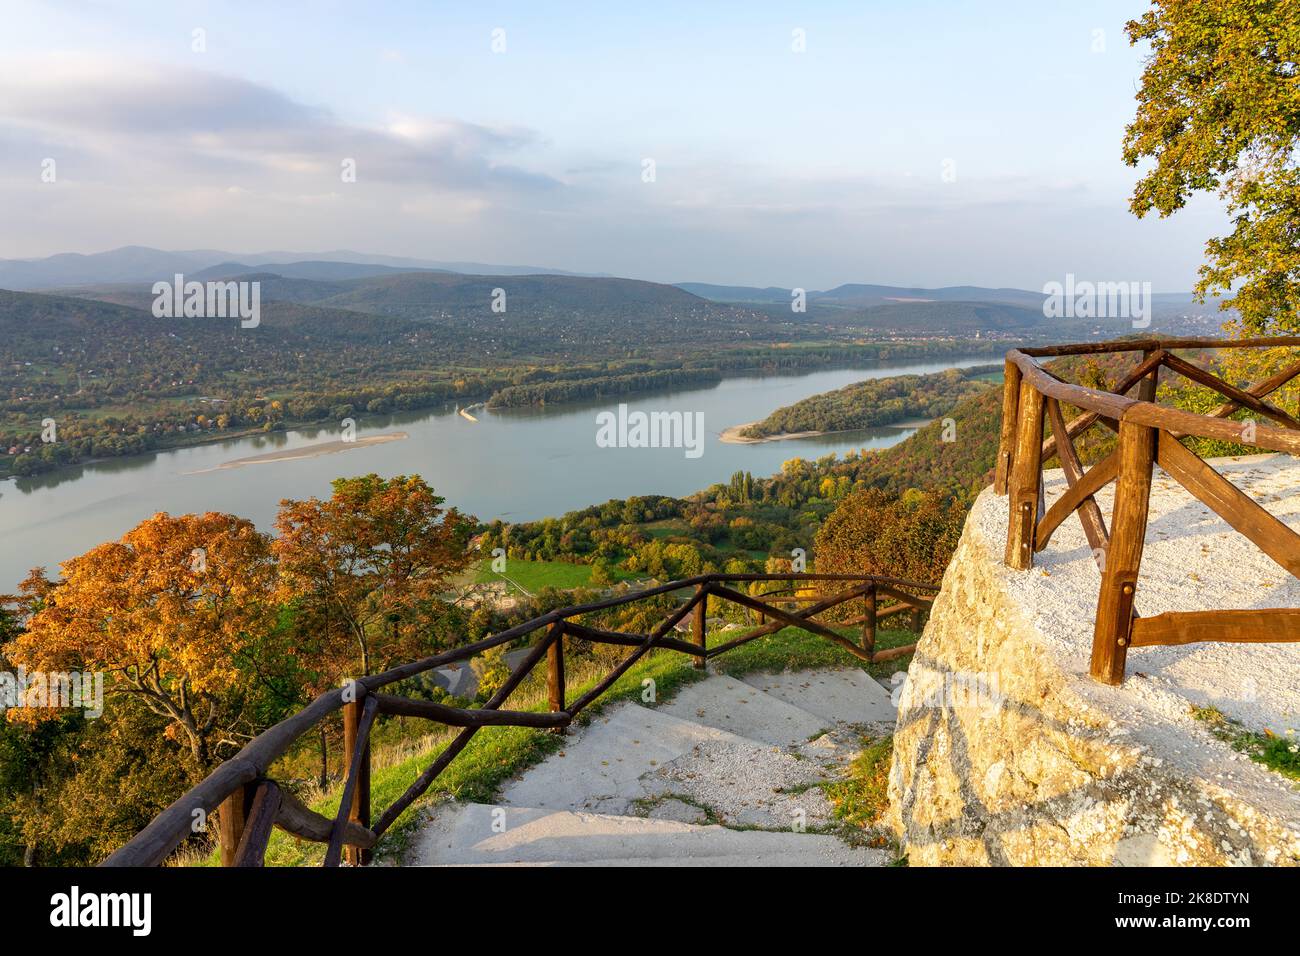 Sentier de randonnée hongrois à côté du château de Visegrad en Hongrie, au-dessus du Danube et des montagnes Pilis Borzsony Banque D'Images